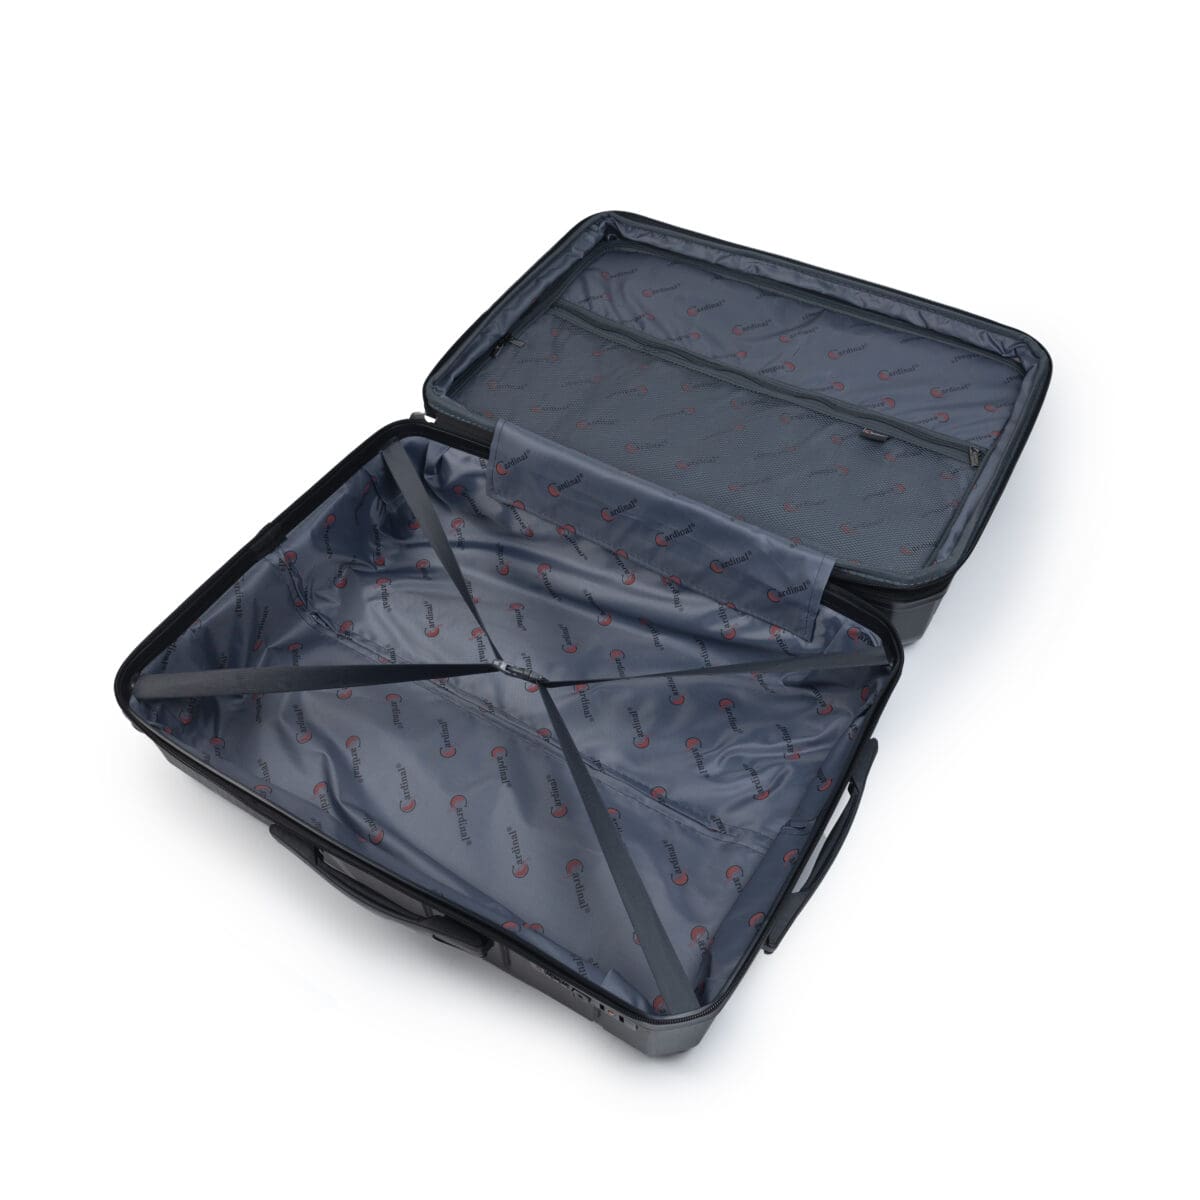 Εσωτερικό βαλίτσας με διαχωριστικό για ρούχα με φερμουάρ